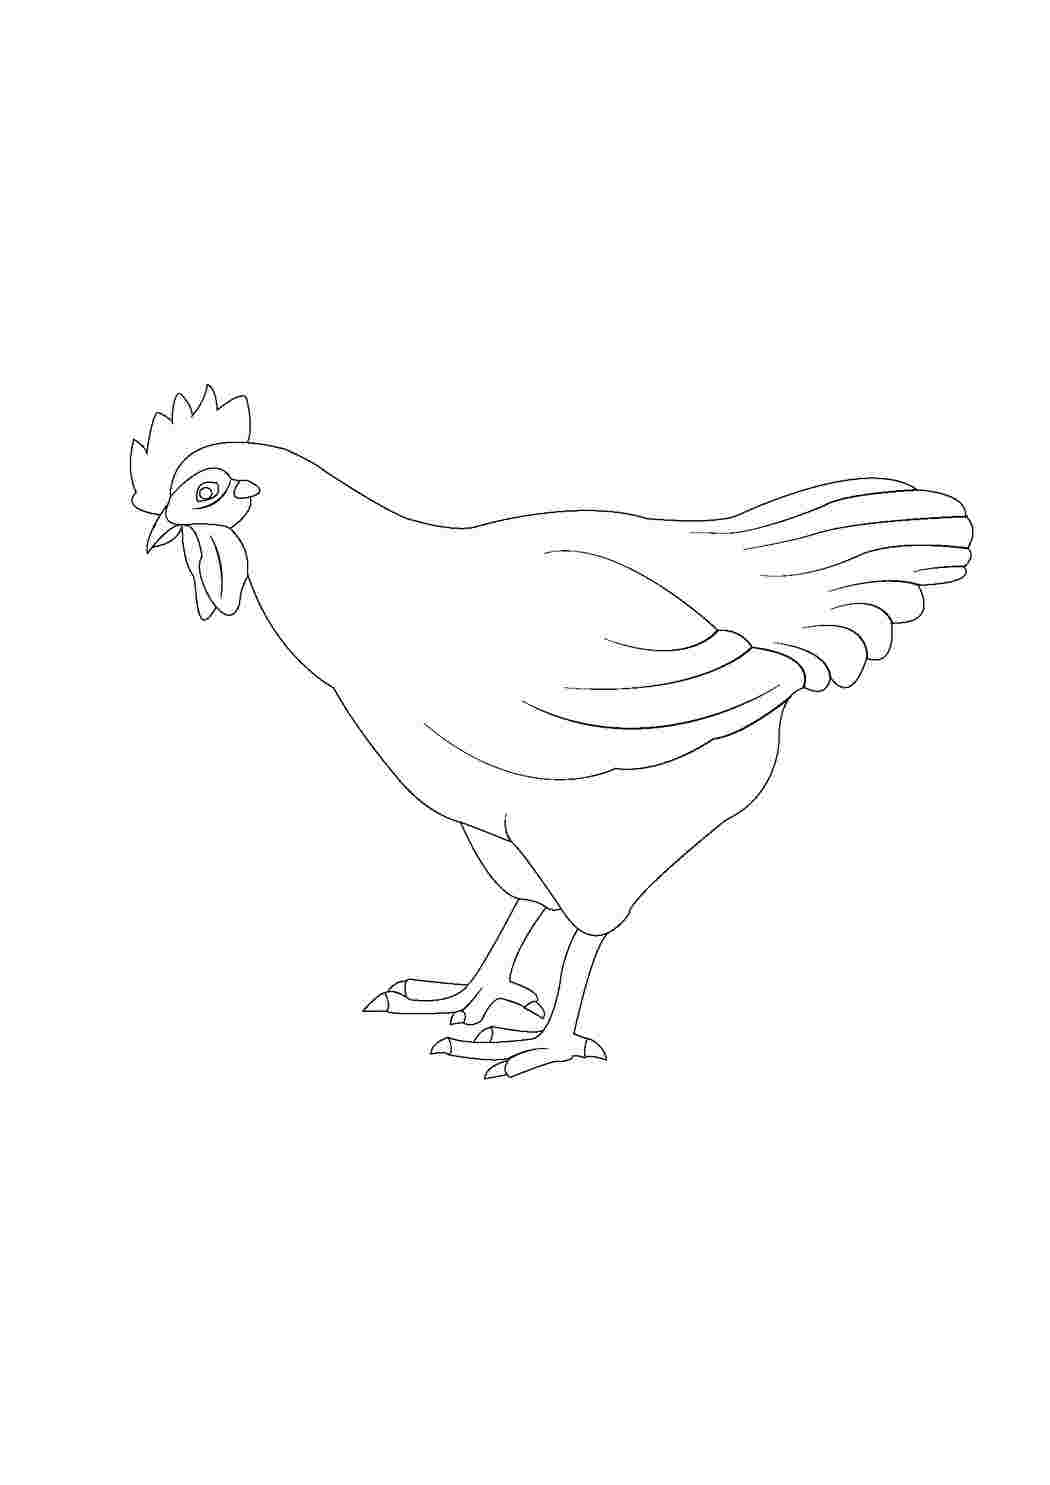 Раскраска Курица и цыплятки - распечатать бесплатно